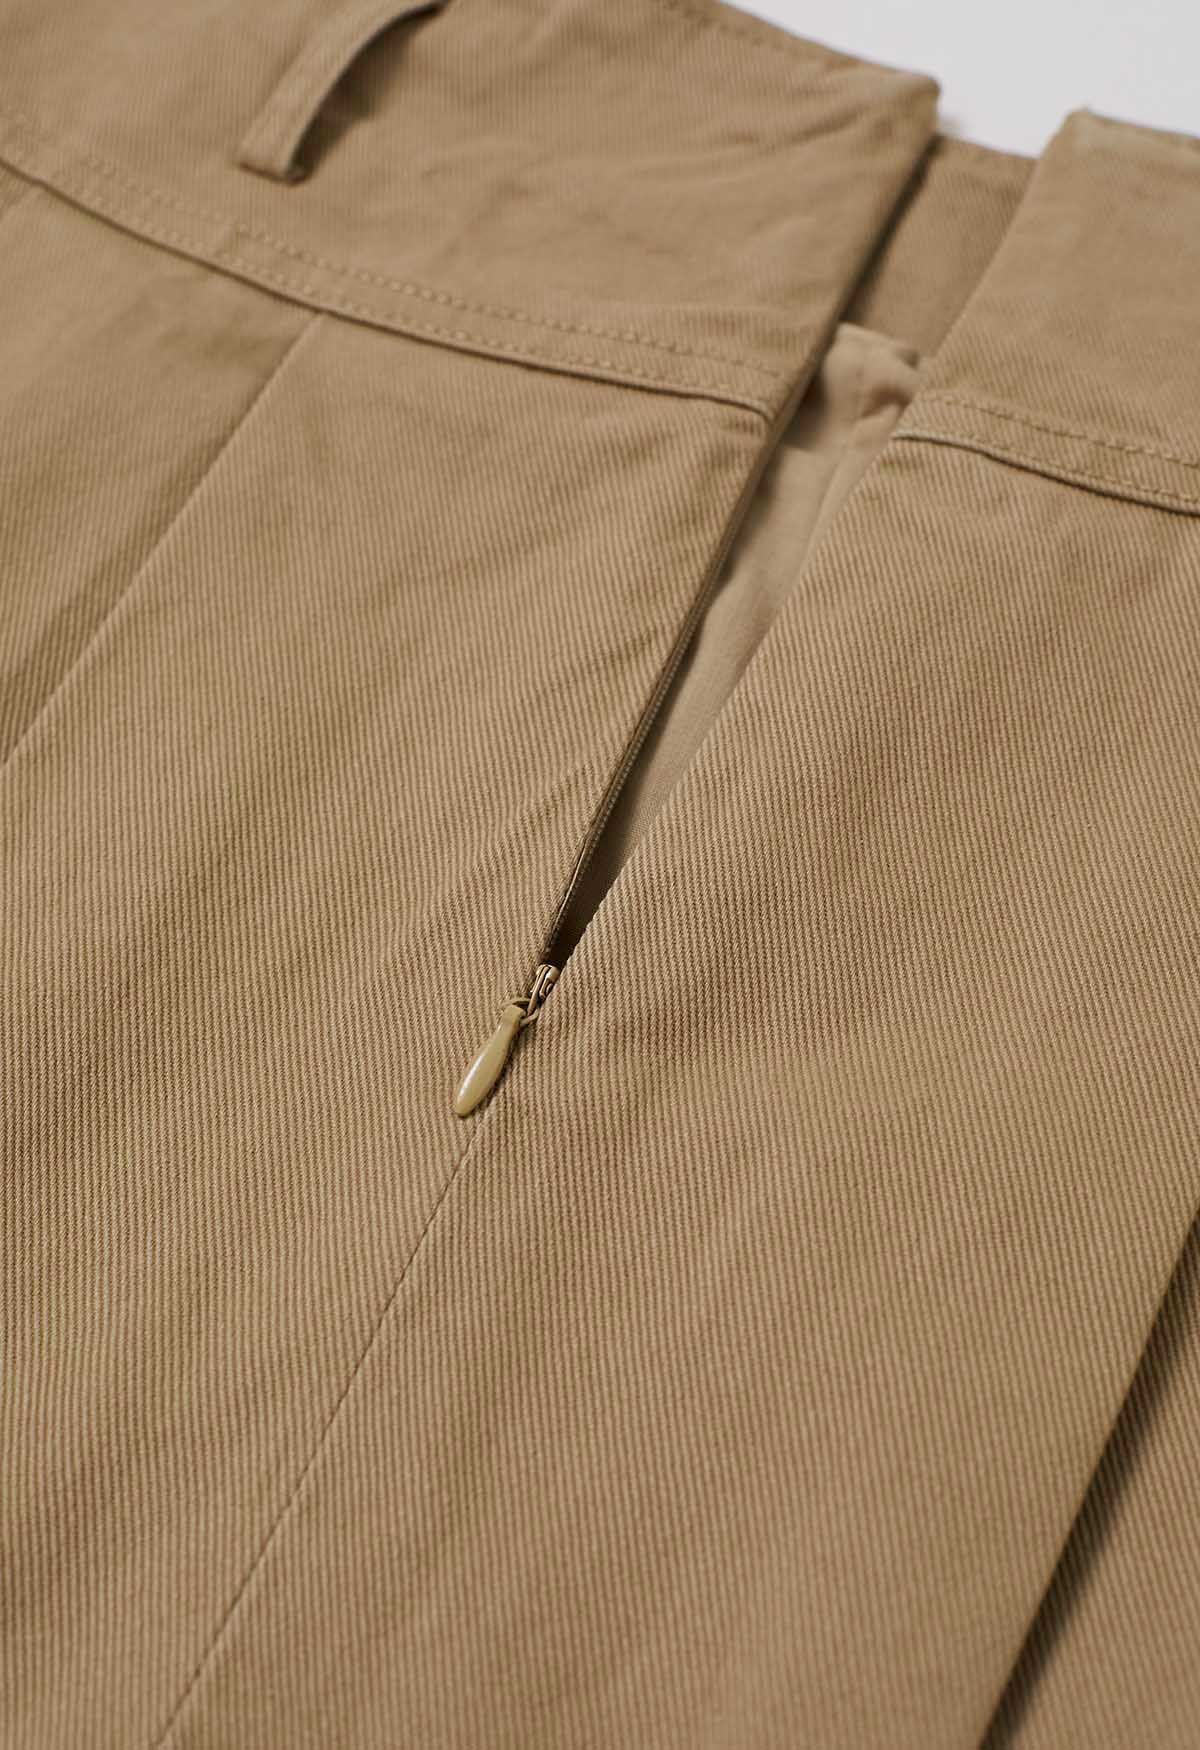 تنورة قصيرة من الدنيم ذات طيات كلاسيكية مع حزام باللون البني الفاتح